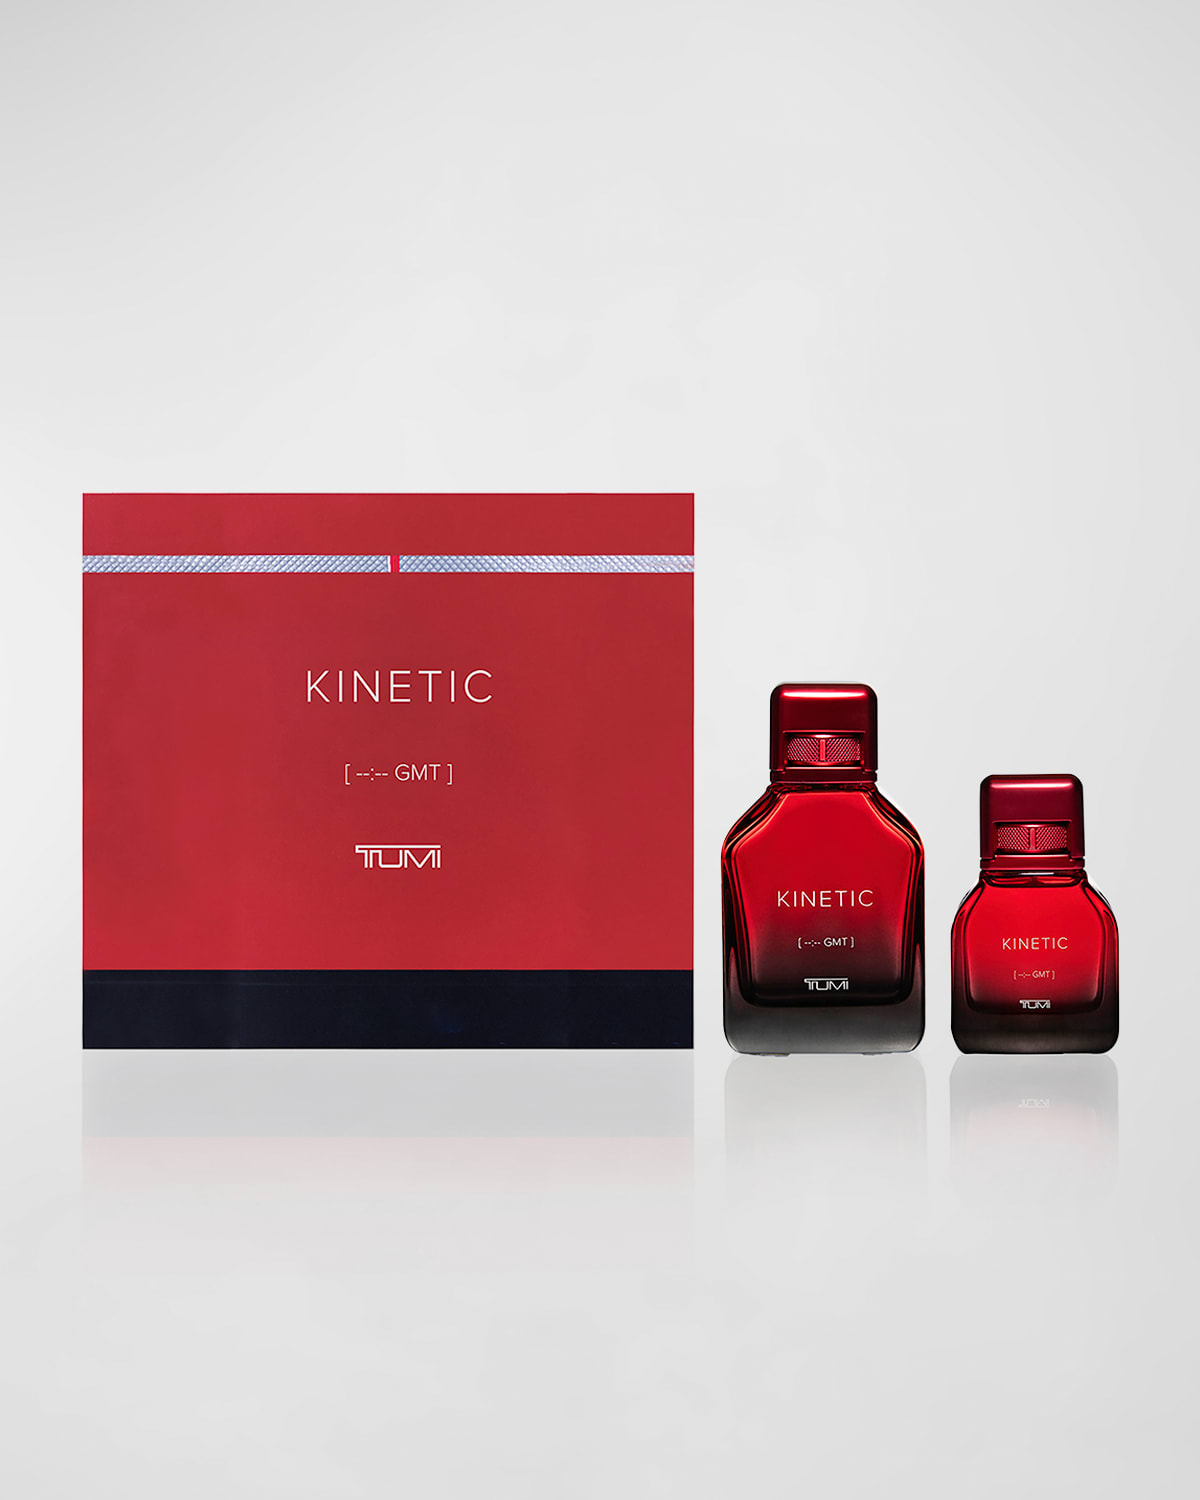 Kinetic [-:- GMT] TUMI for Men 3.4 oz. Eau de Parfum Gift Set